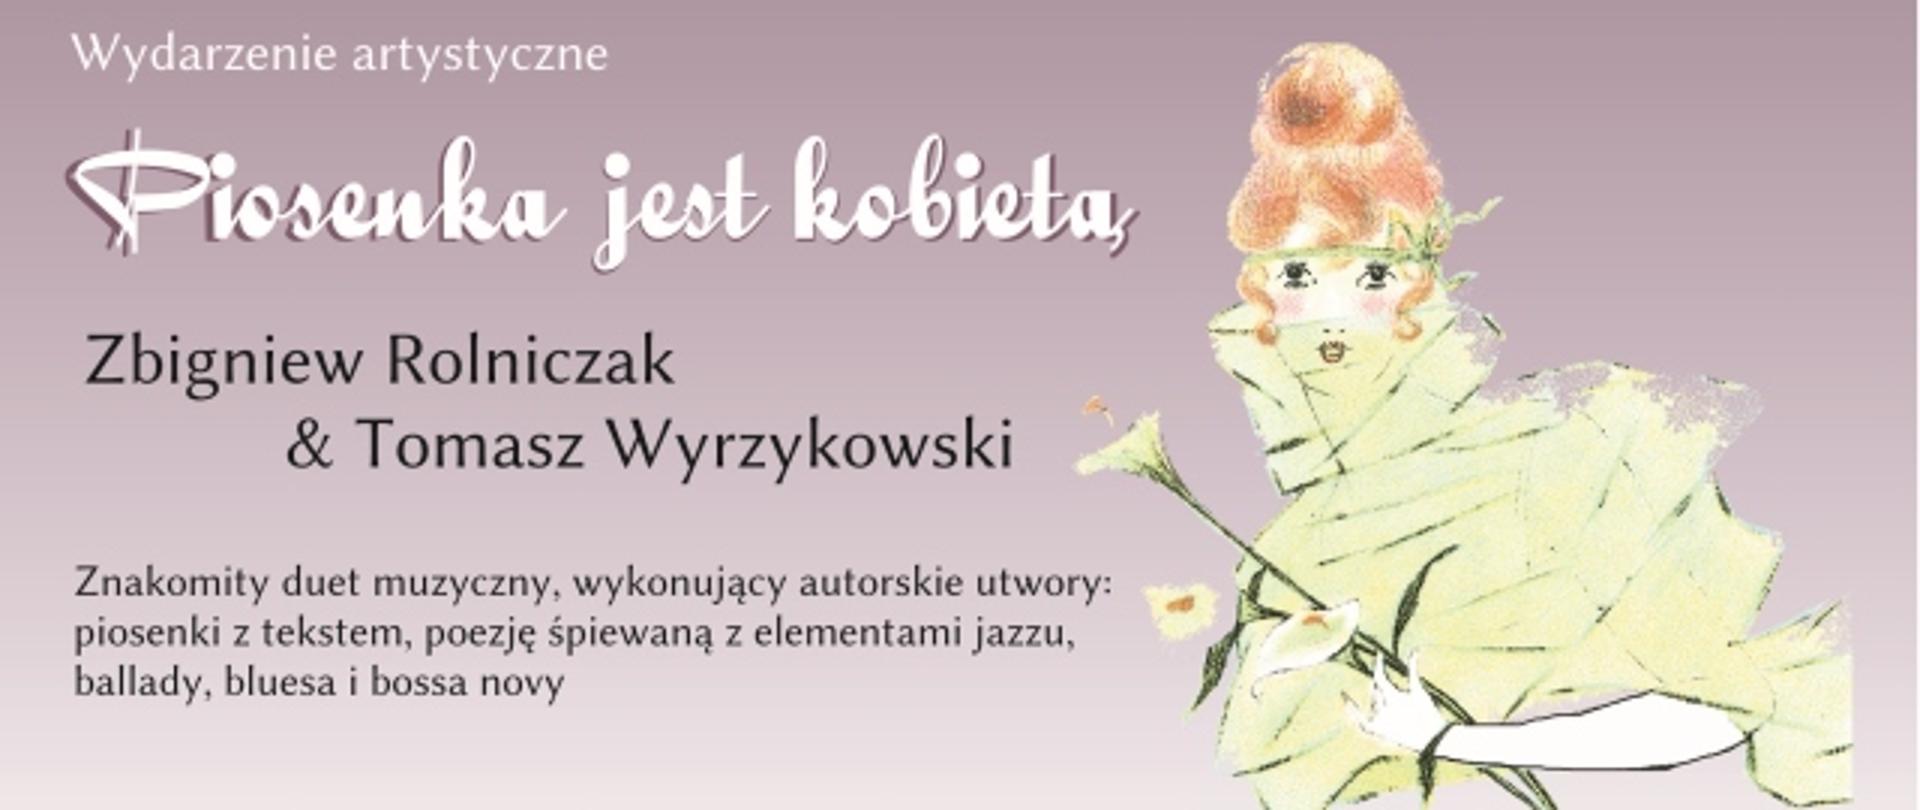 Piosenka jest kobietą: Zbigniew Rolniczak & Tomasz Wyrzykowski, 12 marca 2021, piątek, godz. 18.00, Miejsko-Gminny Ośrodek Kultury w Krzyżu Wielkopolskim